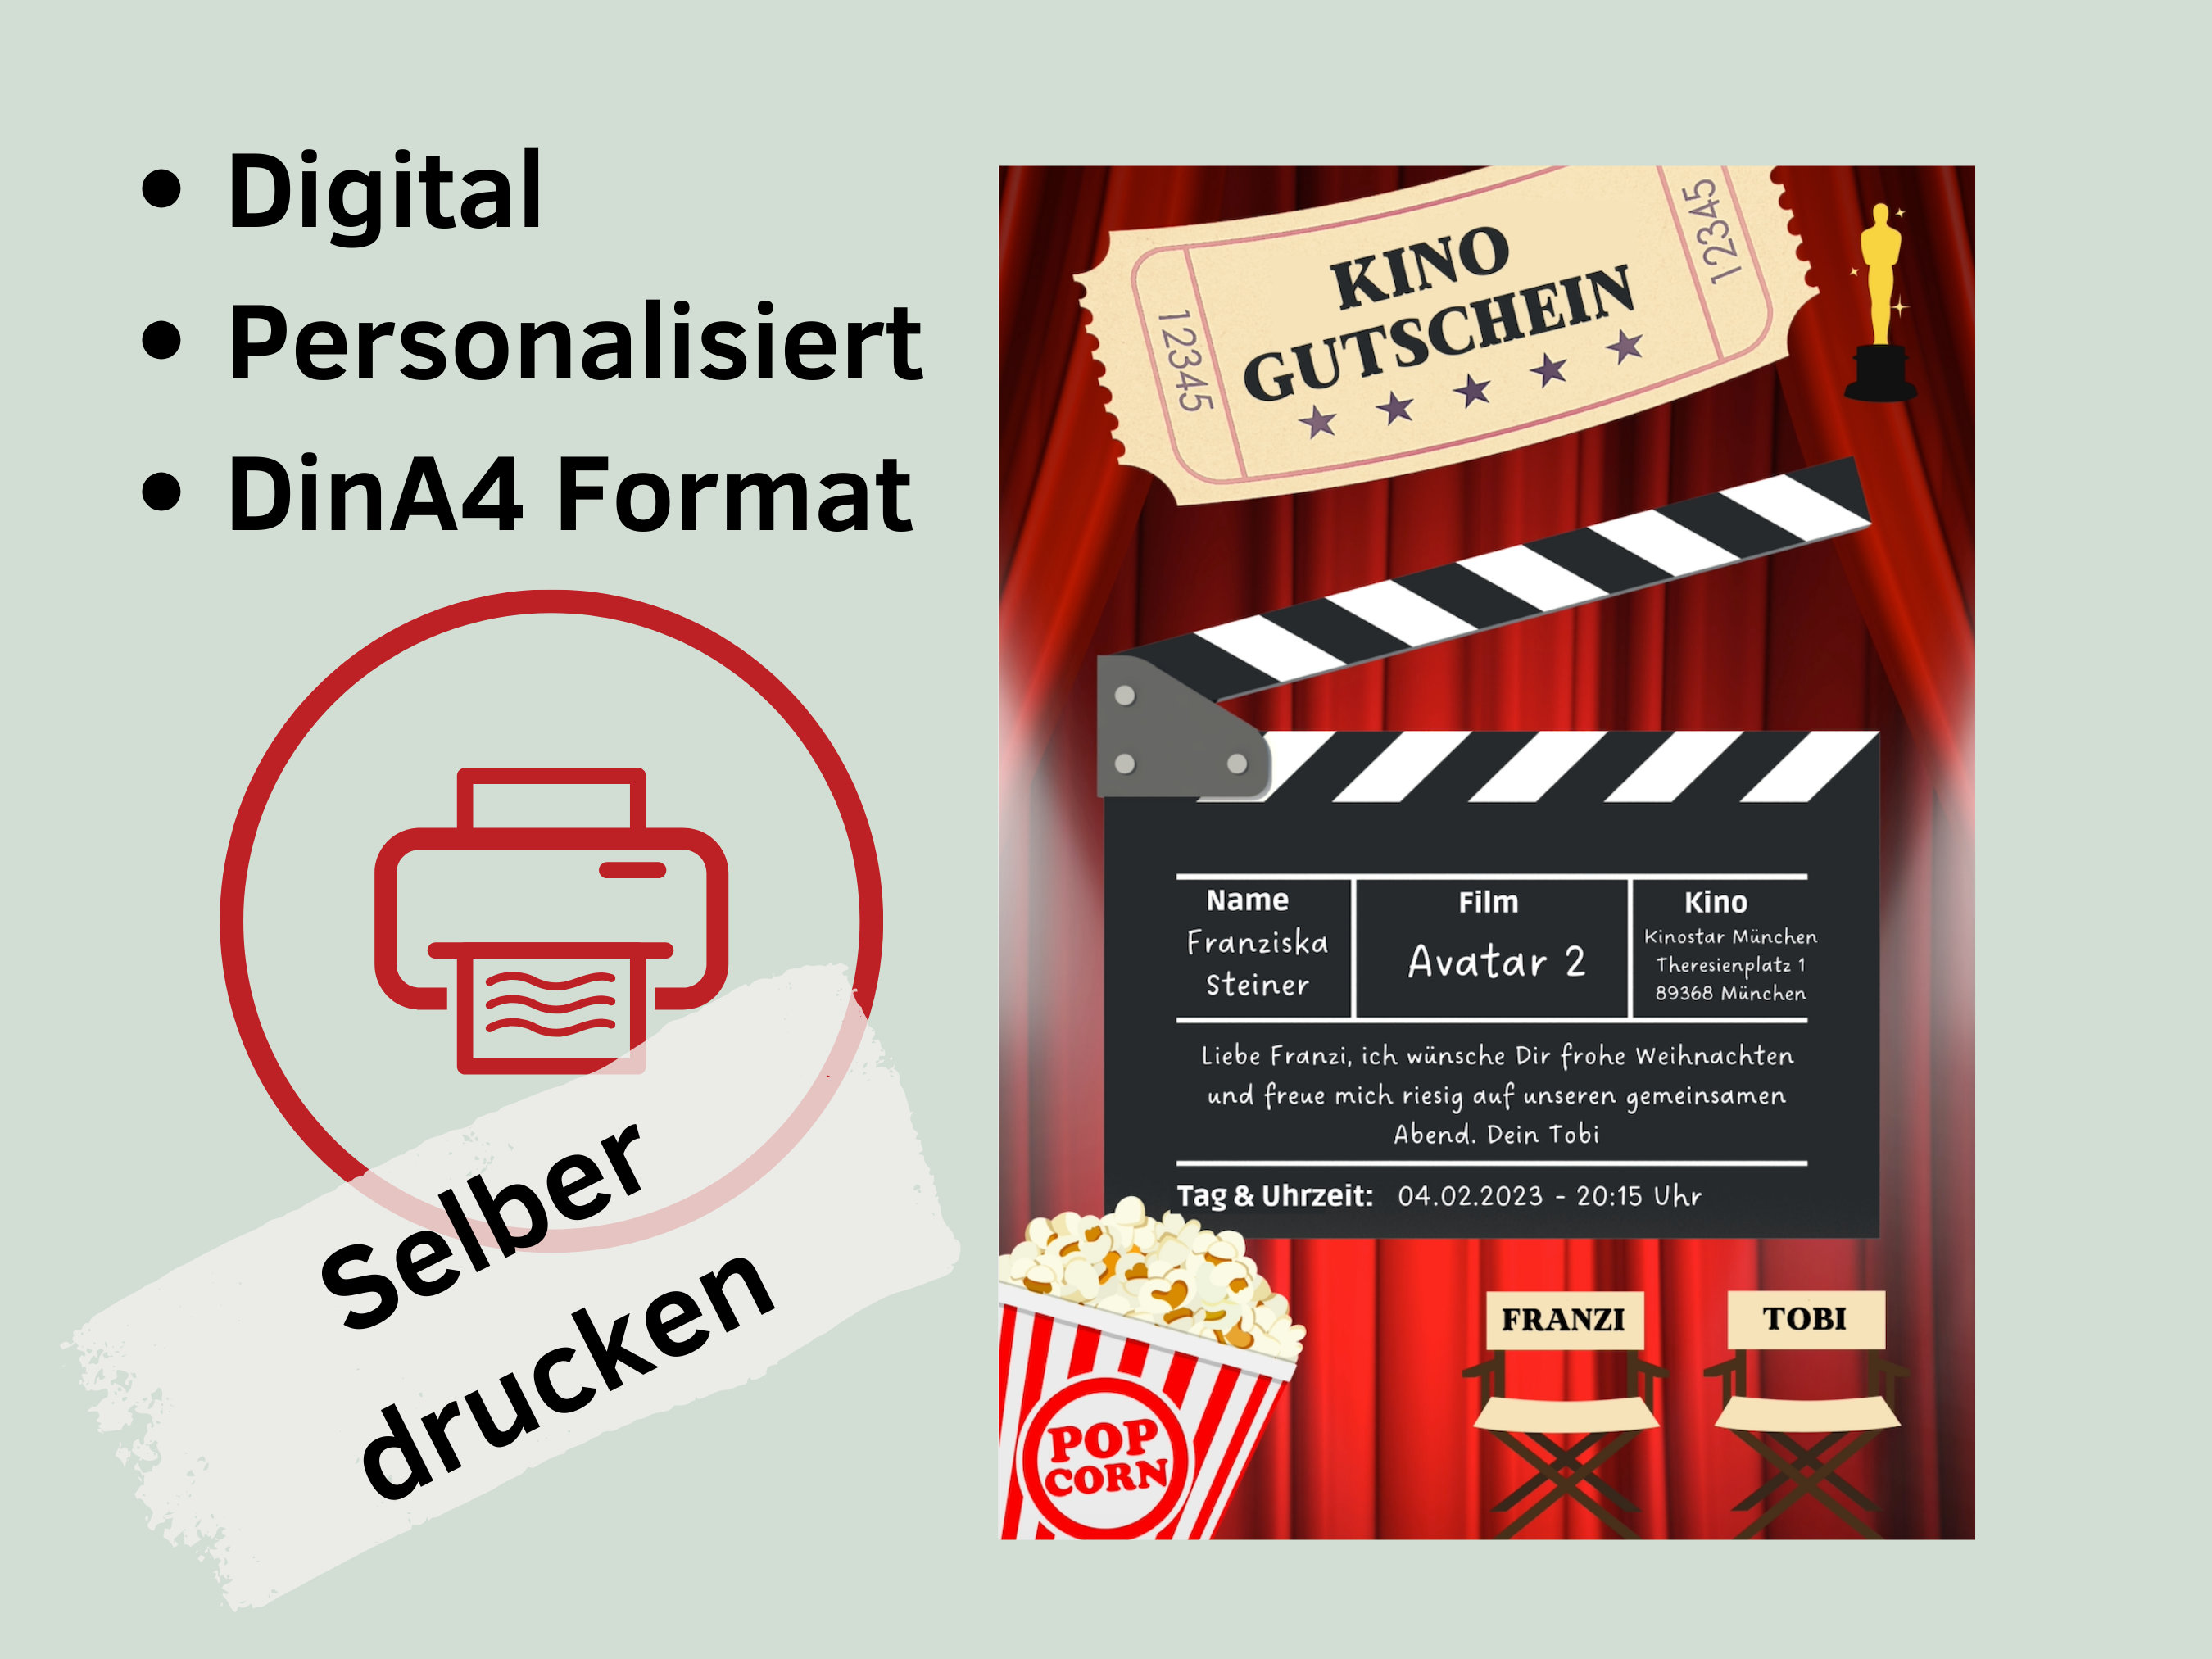 Kino Gutschein personalisiert zum drucken I Gutschein Kinoabend digital I  Weihnachtsgeschenk Kino I Last Minute Weihnachtsgeschenk für Paare